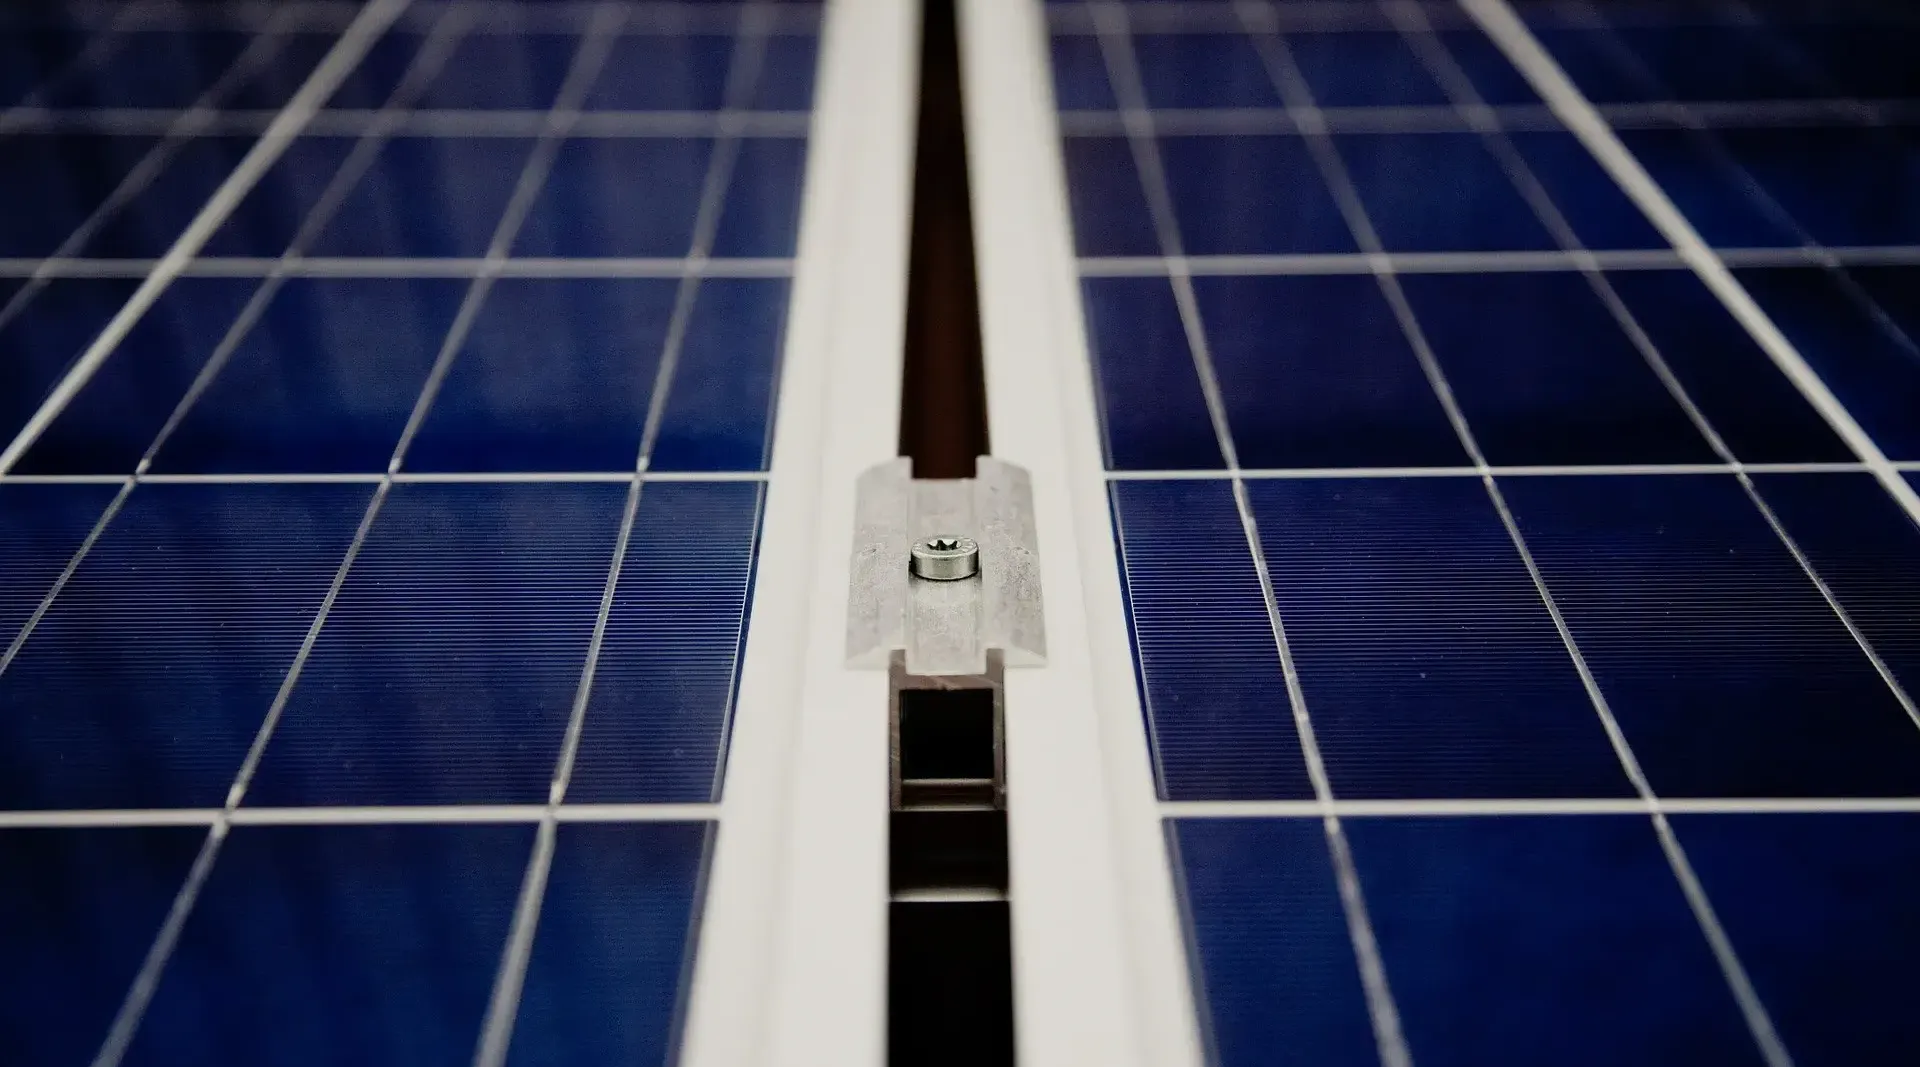 Paneles solares instalados en el tejado de nuestra empresa para ayudar a reducir la huella ecológica debida al uso y consumo - Inelmatic